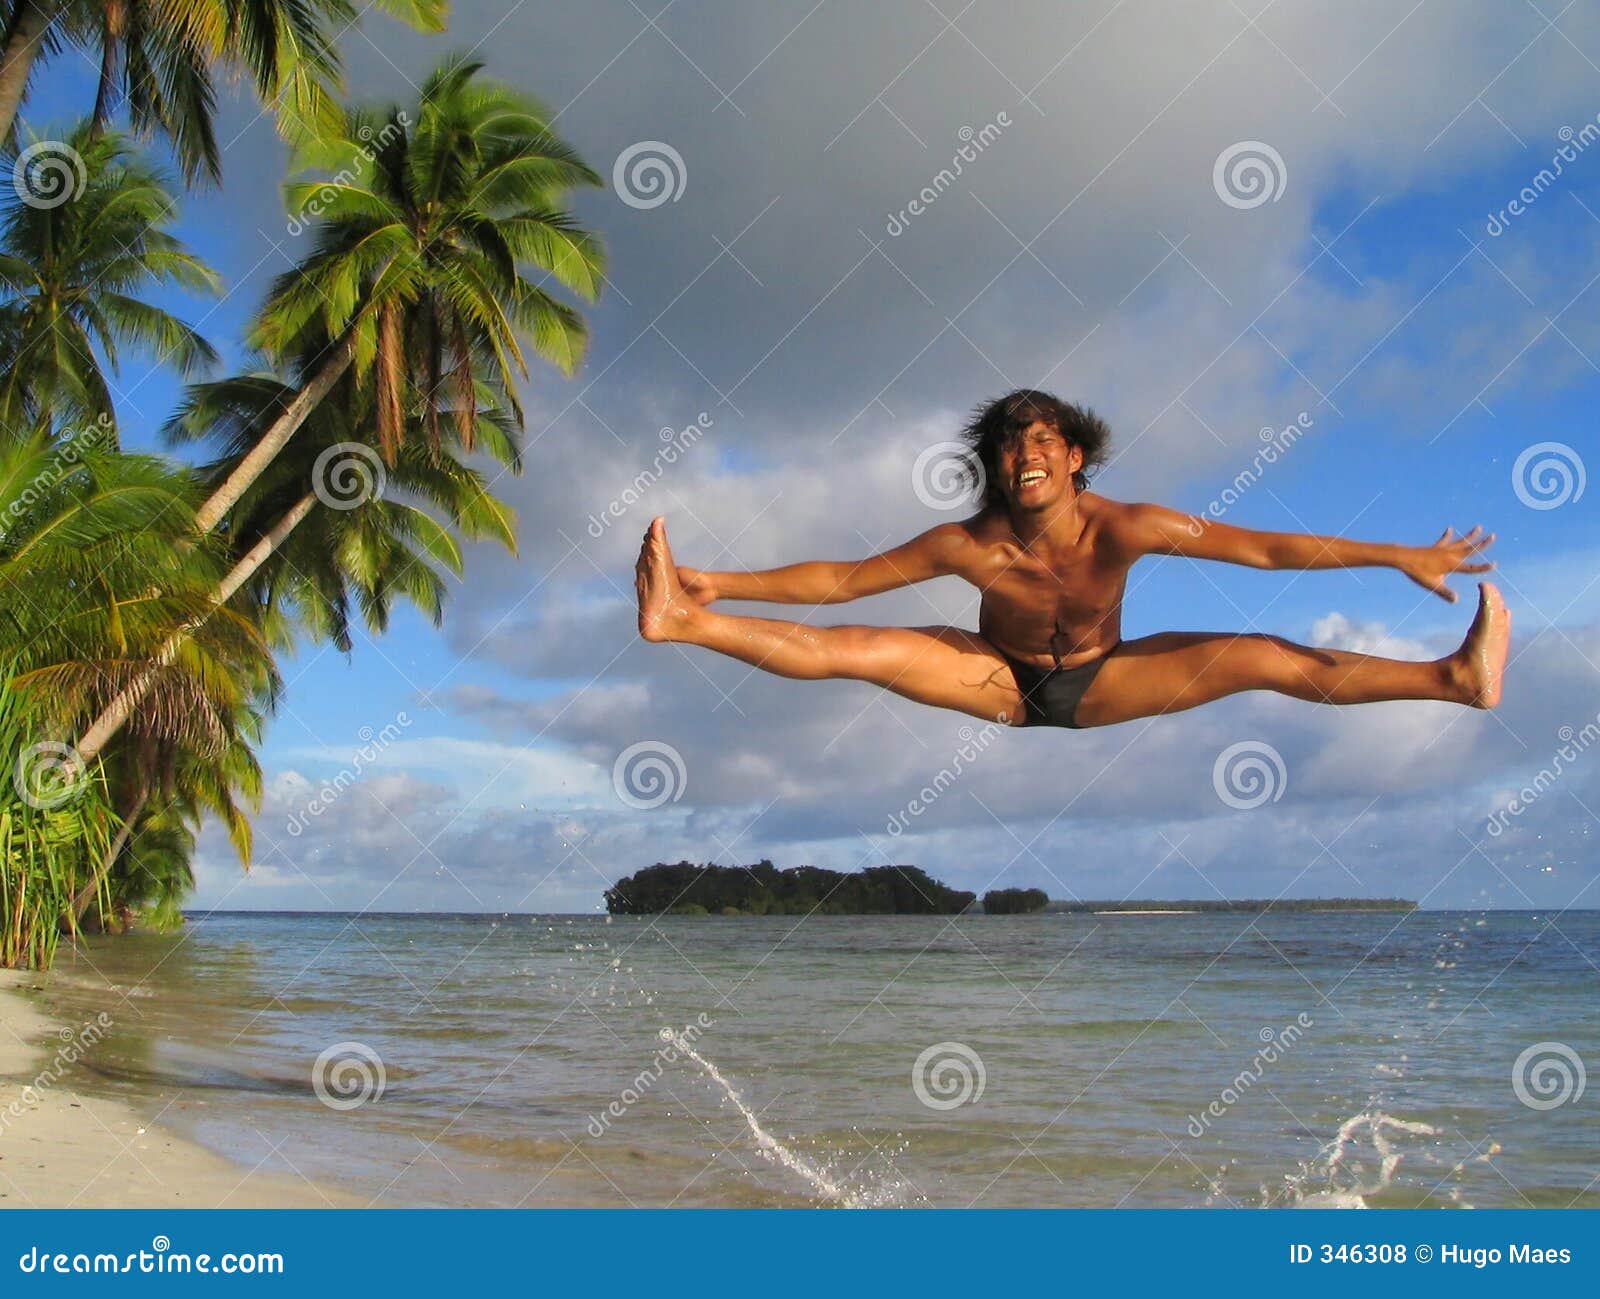 Animar-baile asiático del muchacho en la playa tropical. La ejecución asiática del muchacho animar-baila salto en una playa tropical prístina.